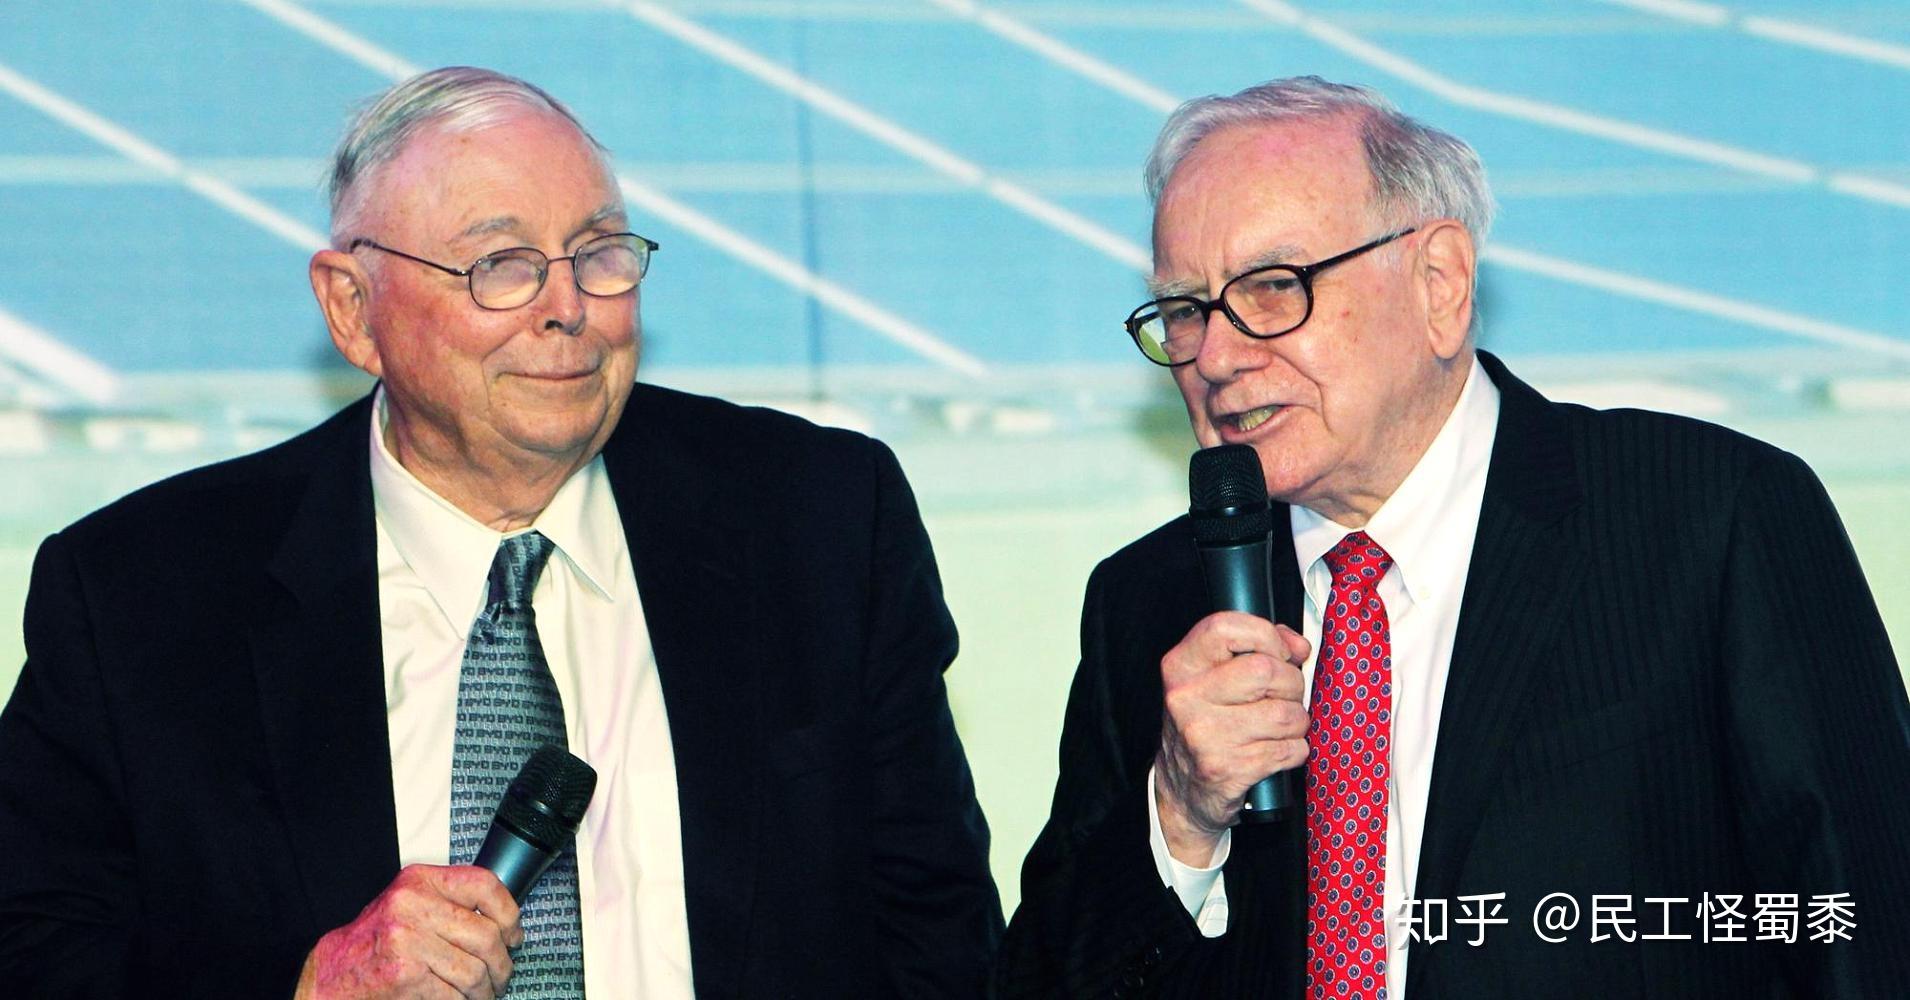 How Warren Buffett, Charlie Munger and Bill Gates work together